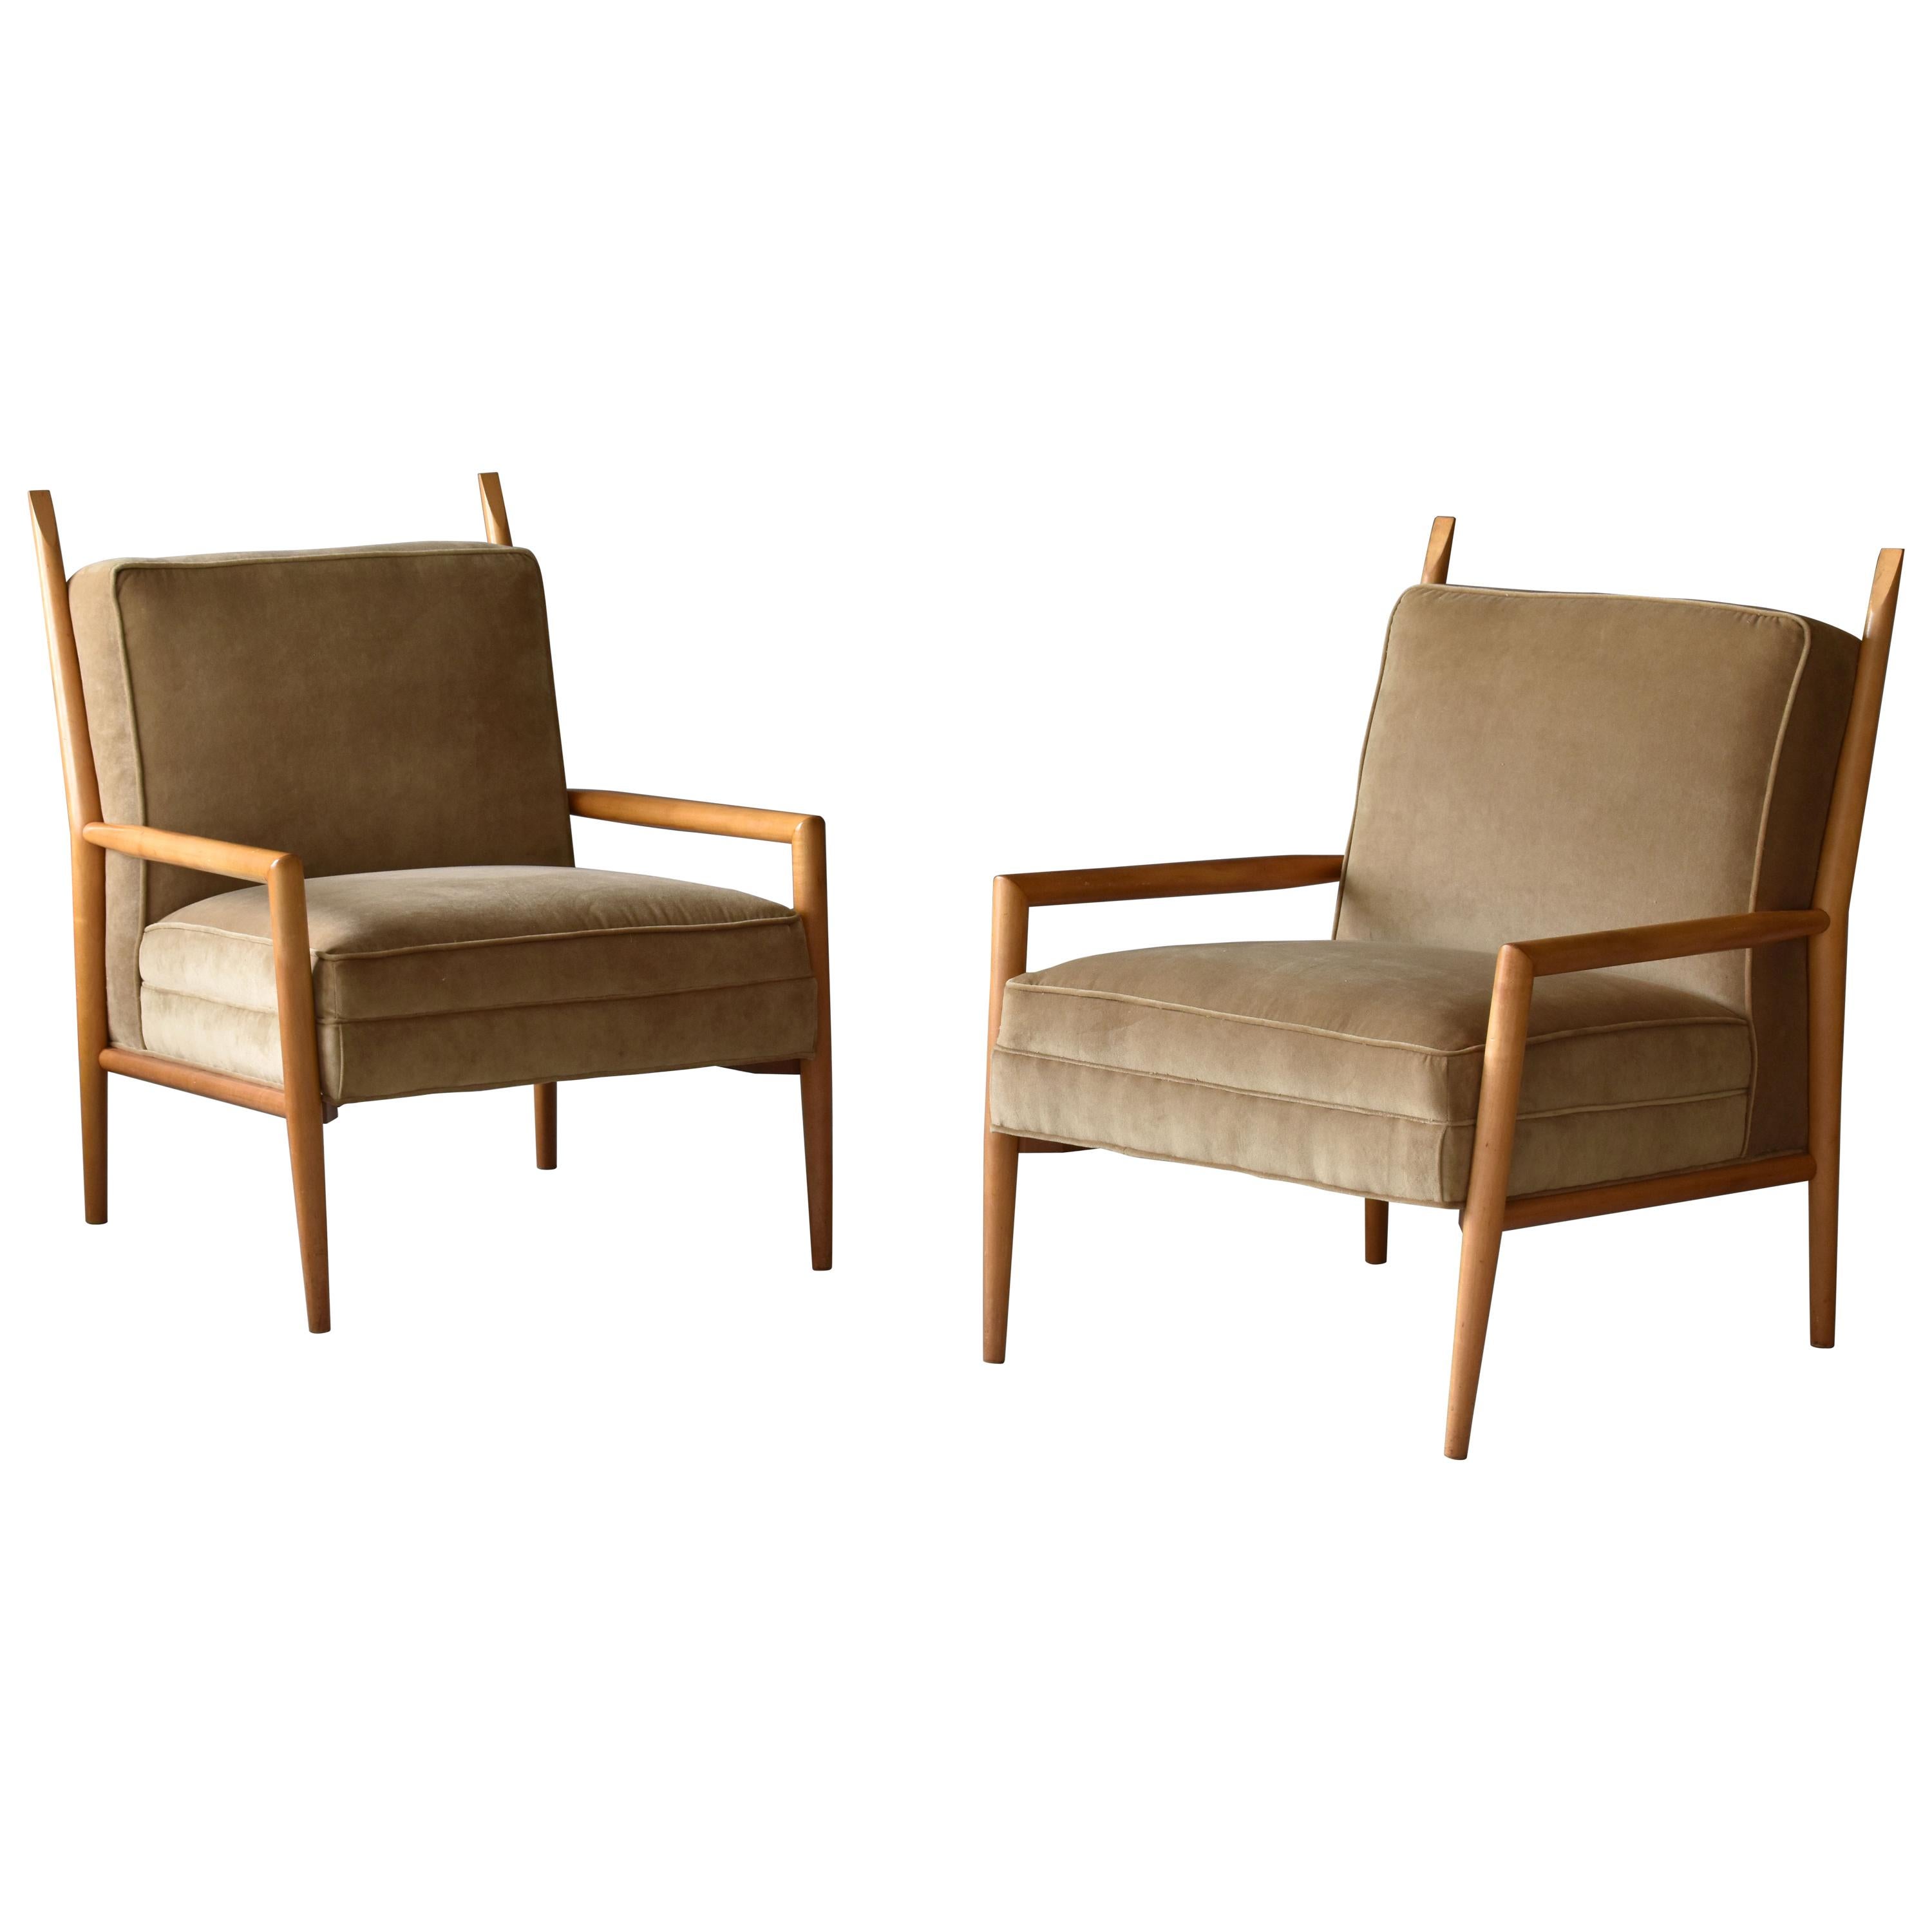 Paul McCobb, "Planner" Lounge Chairs, Velvet, Maple, Custom Craft, Inc 1954